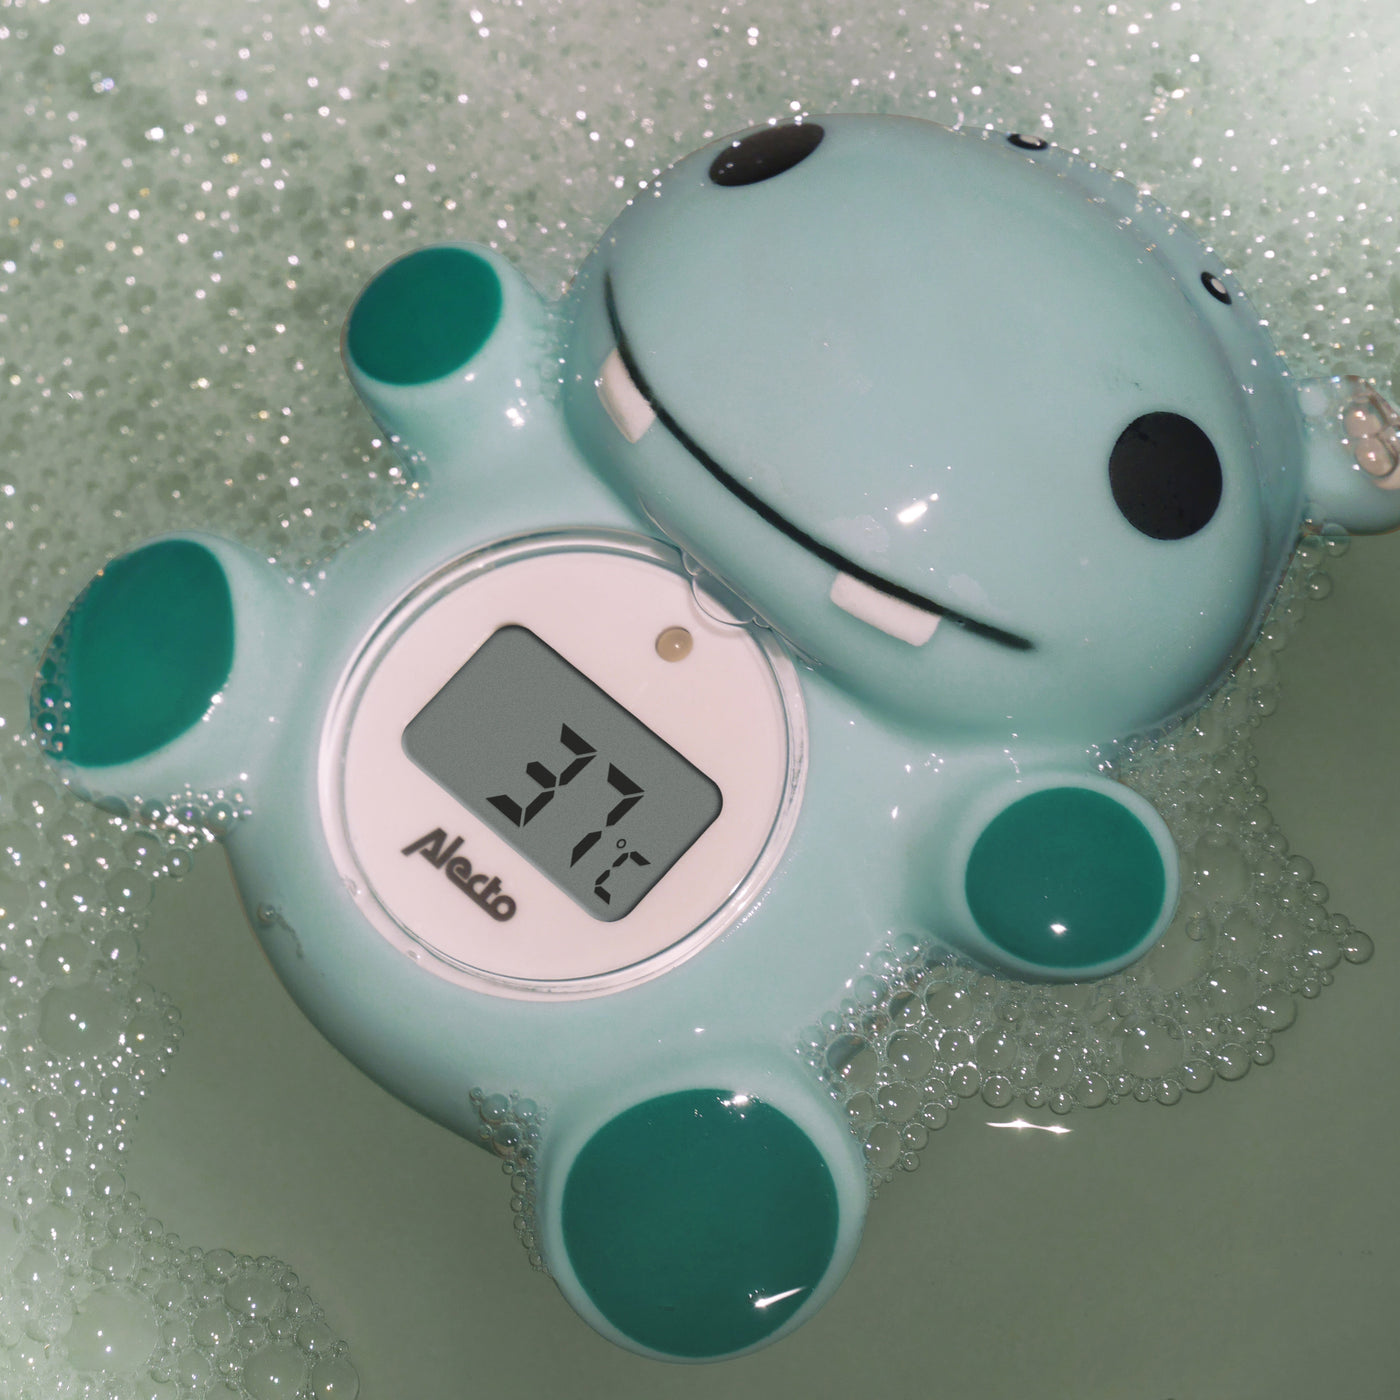 Alecto BC-11 HIPPO - Bath and room thermometer, hippo